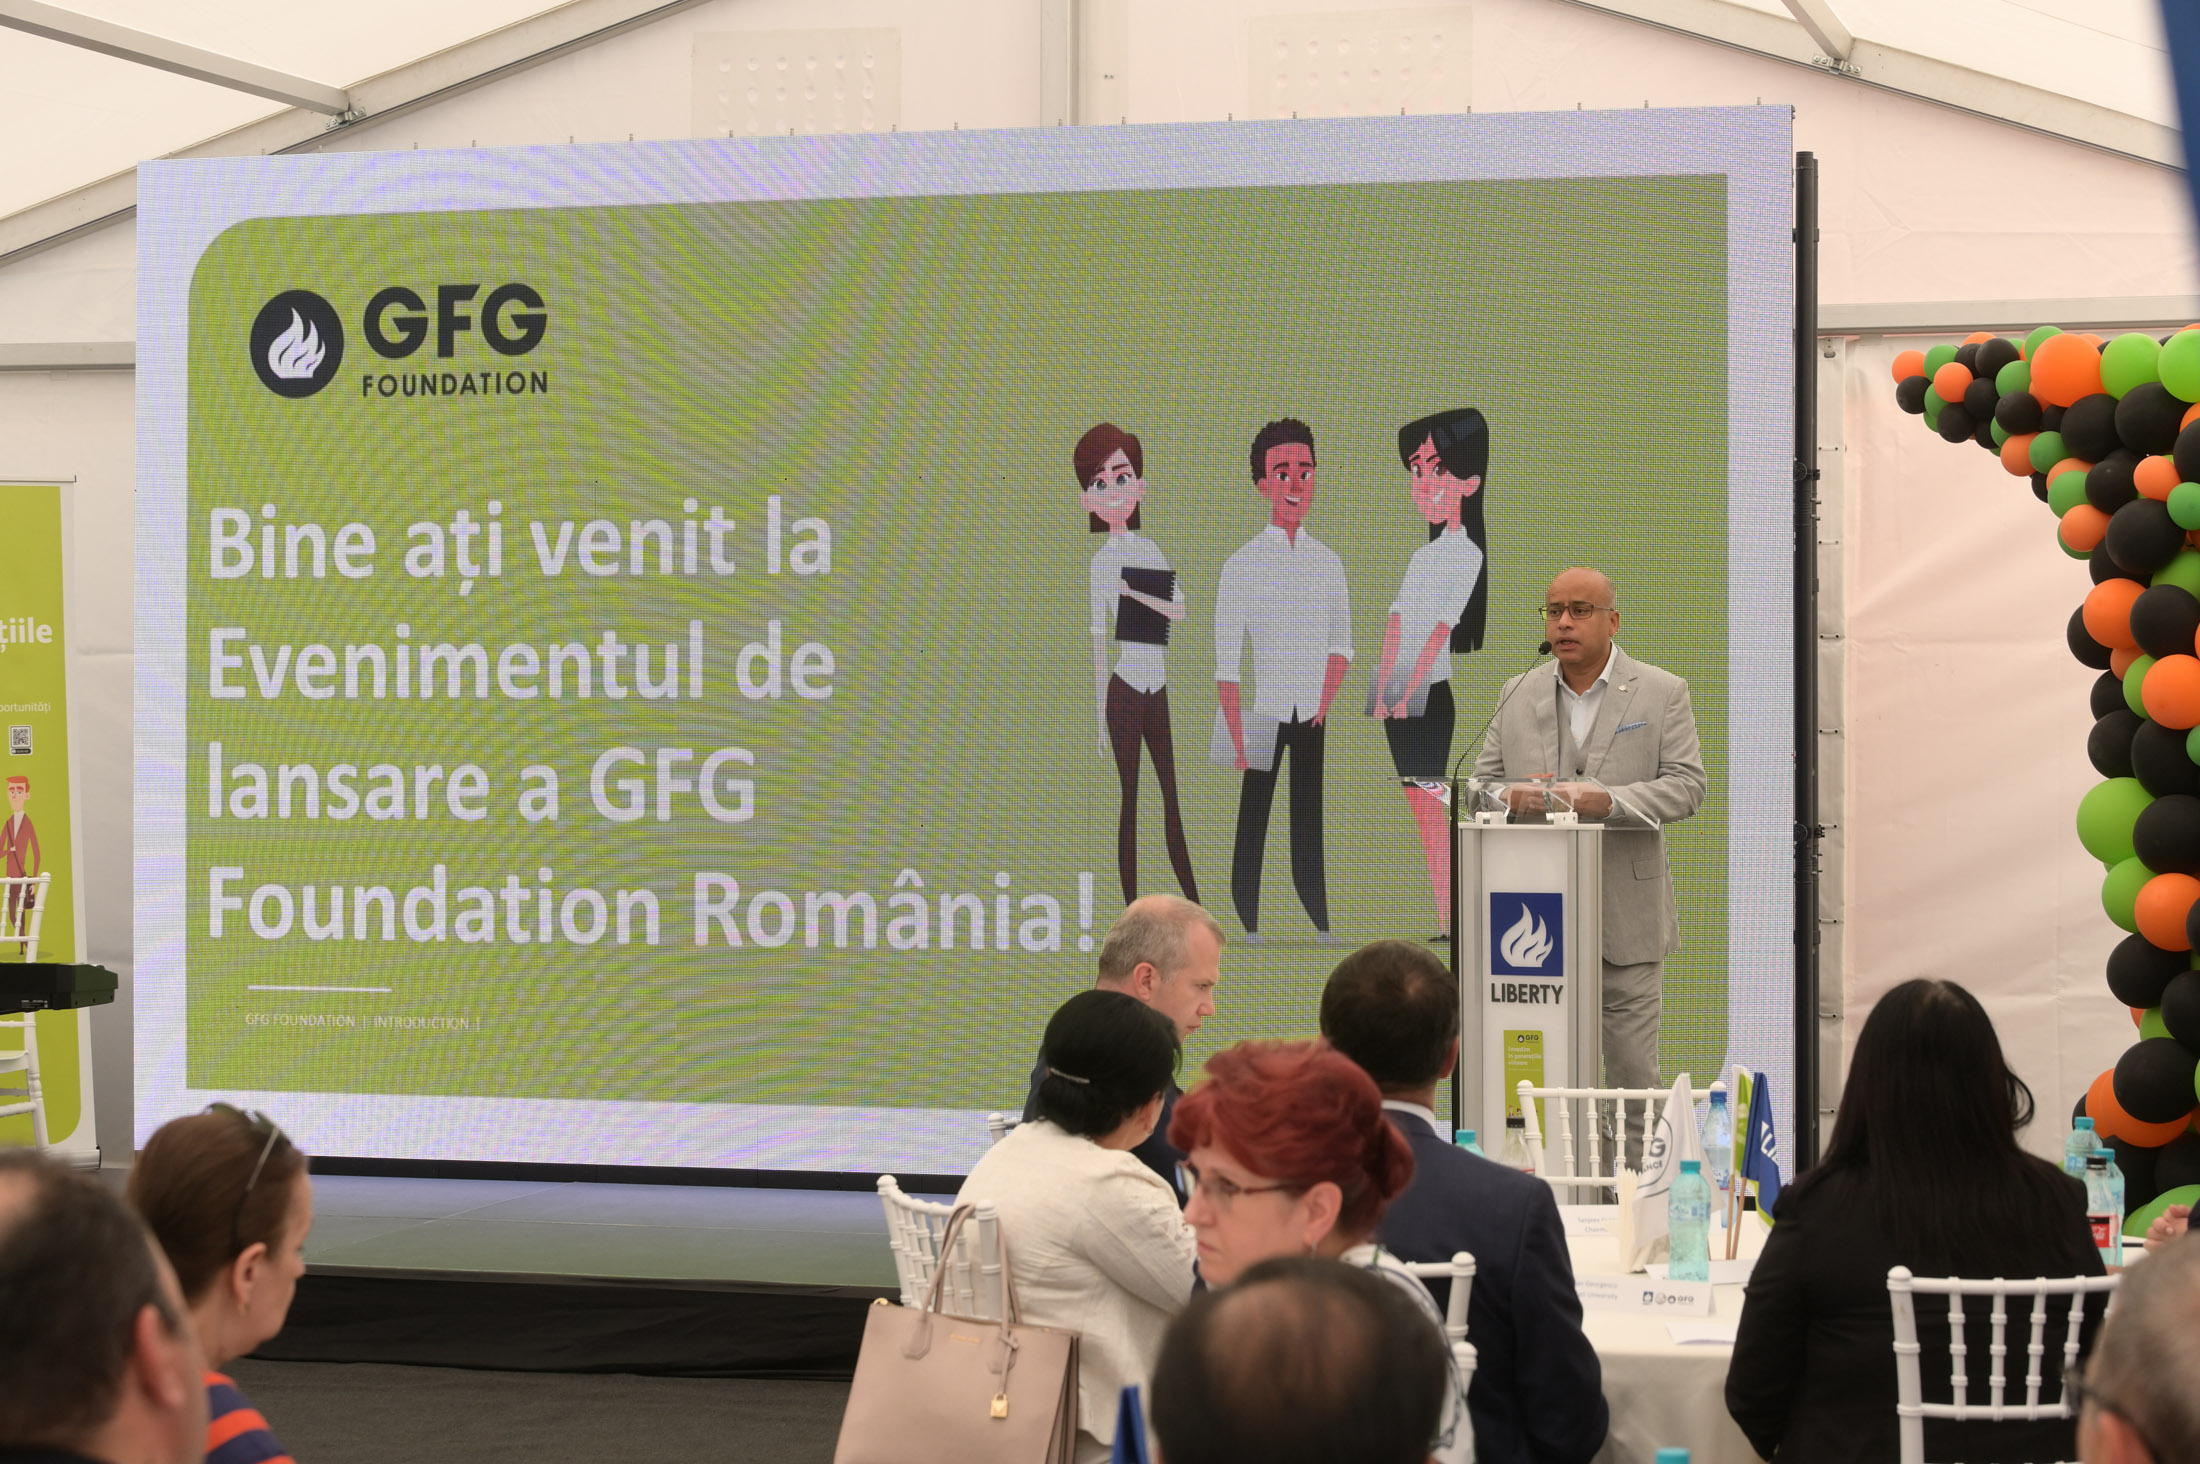 Фондацијата ГФГ се проширува во Романија